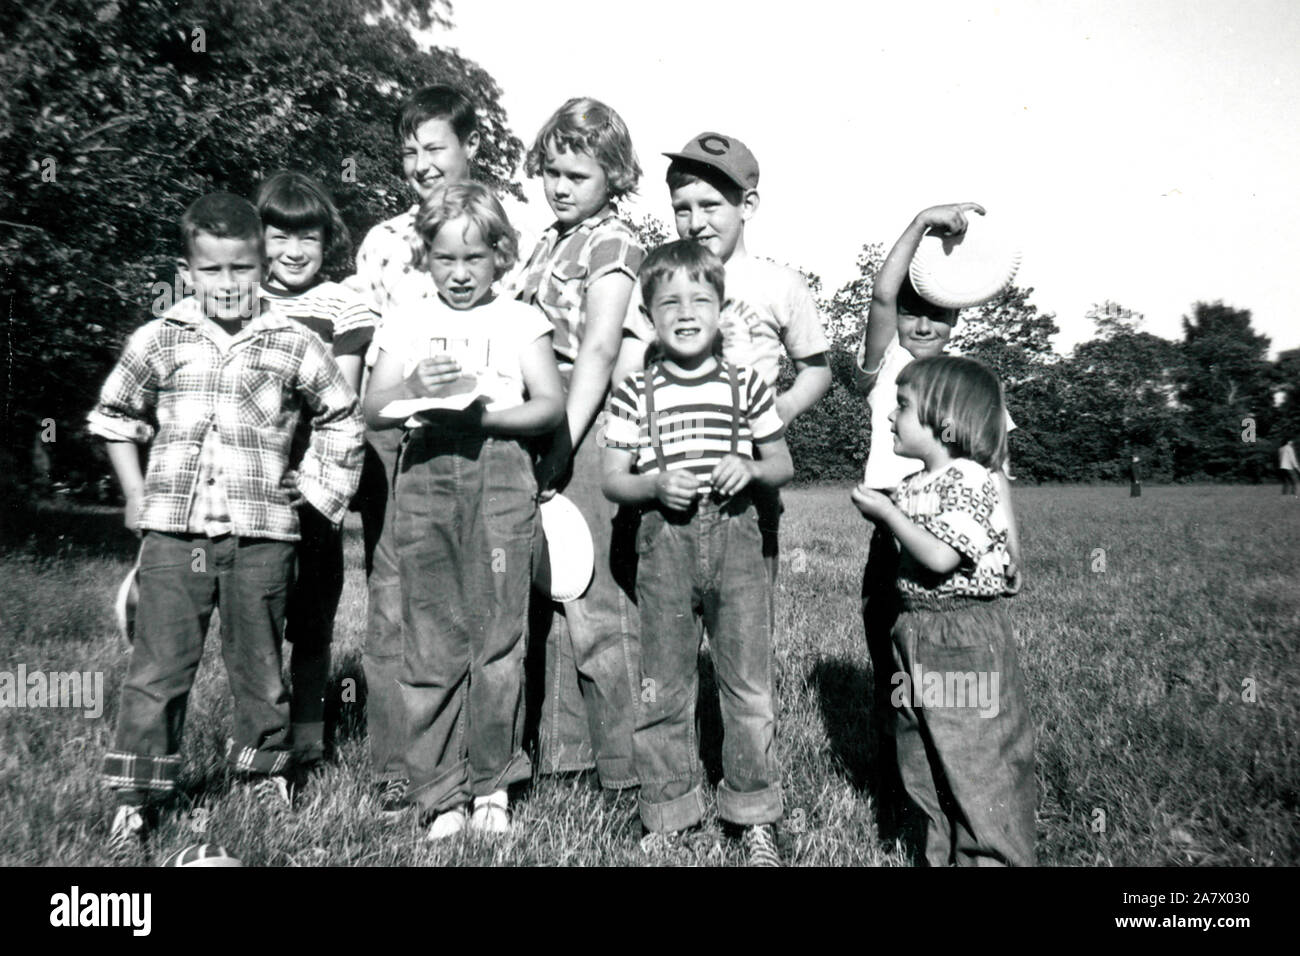 Junge amerikanische Baby-boomer, die in den Vororten von Chicago in den frühen 1950er Jahren. Stockfoto